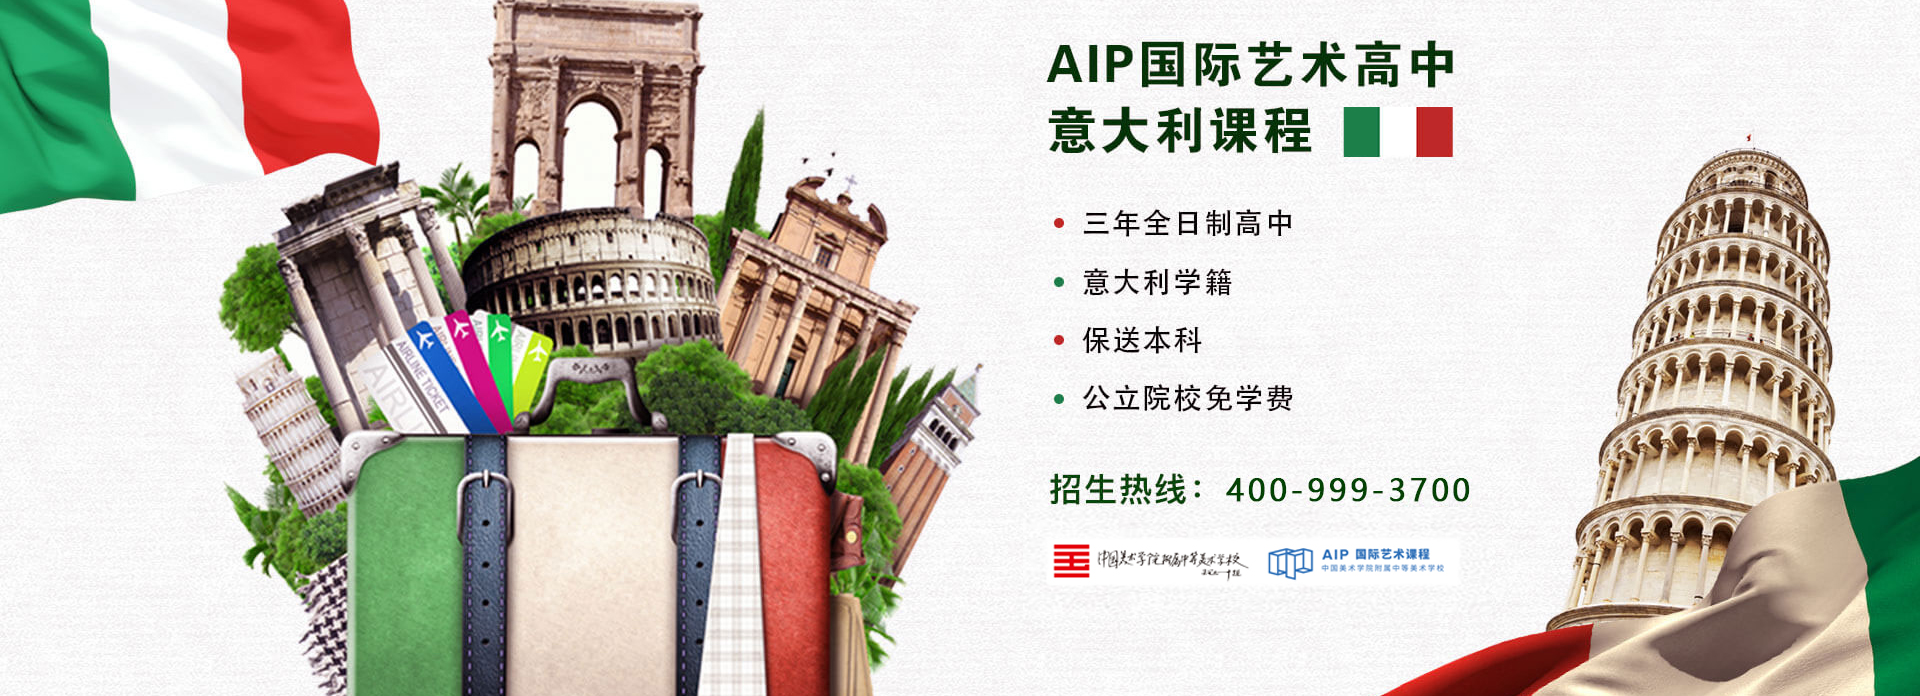 中国美术学院附中AIP意大利班招生简章